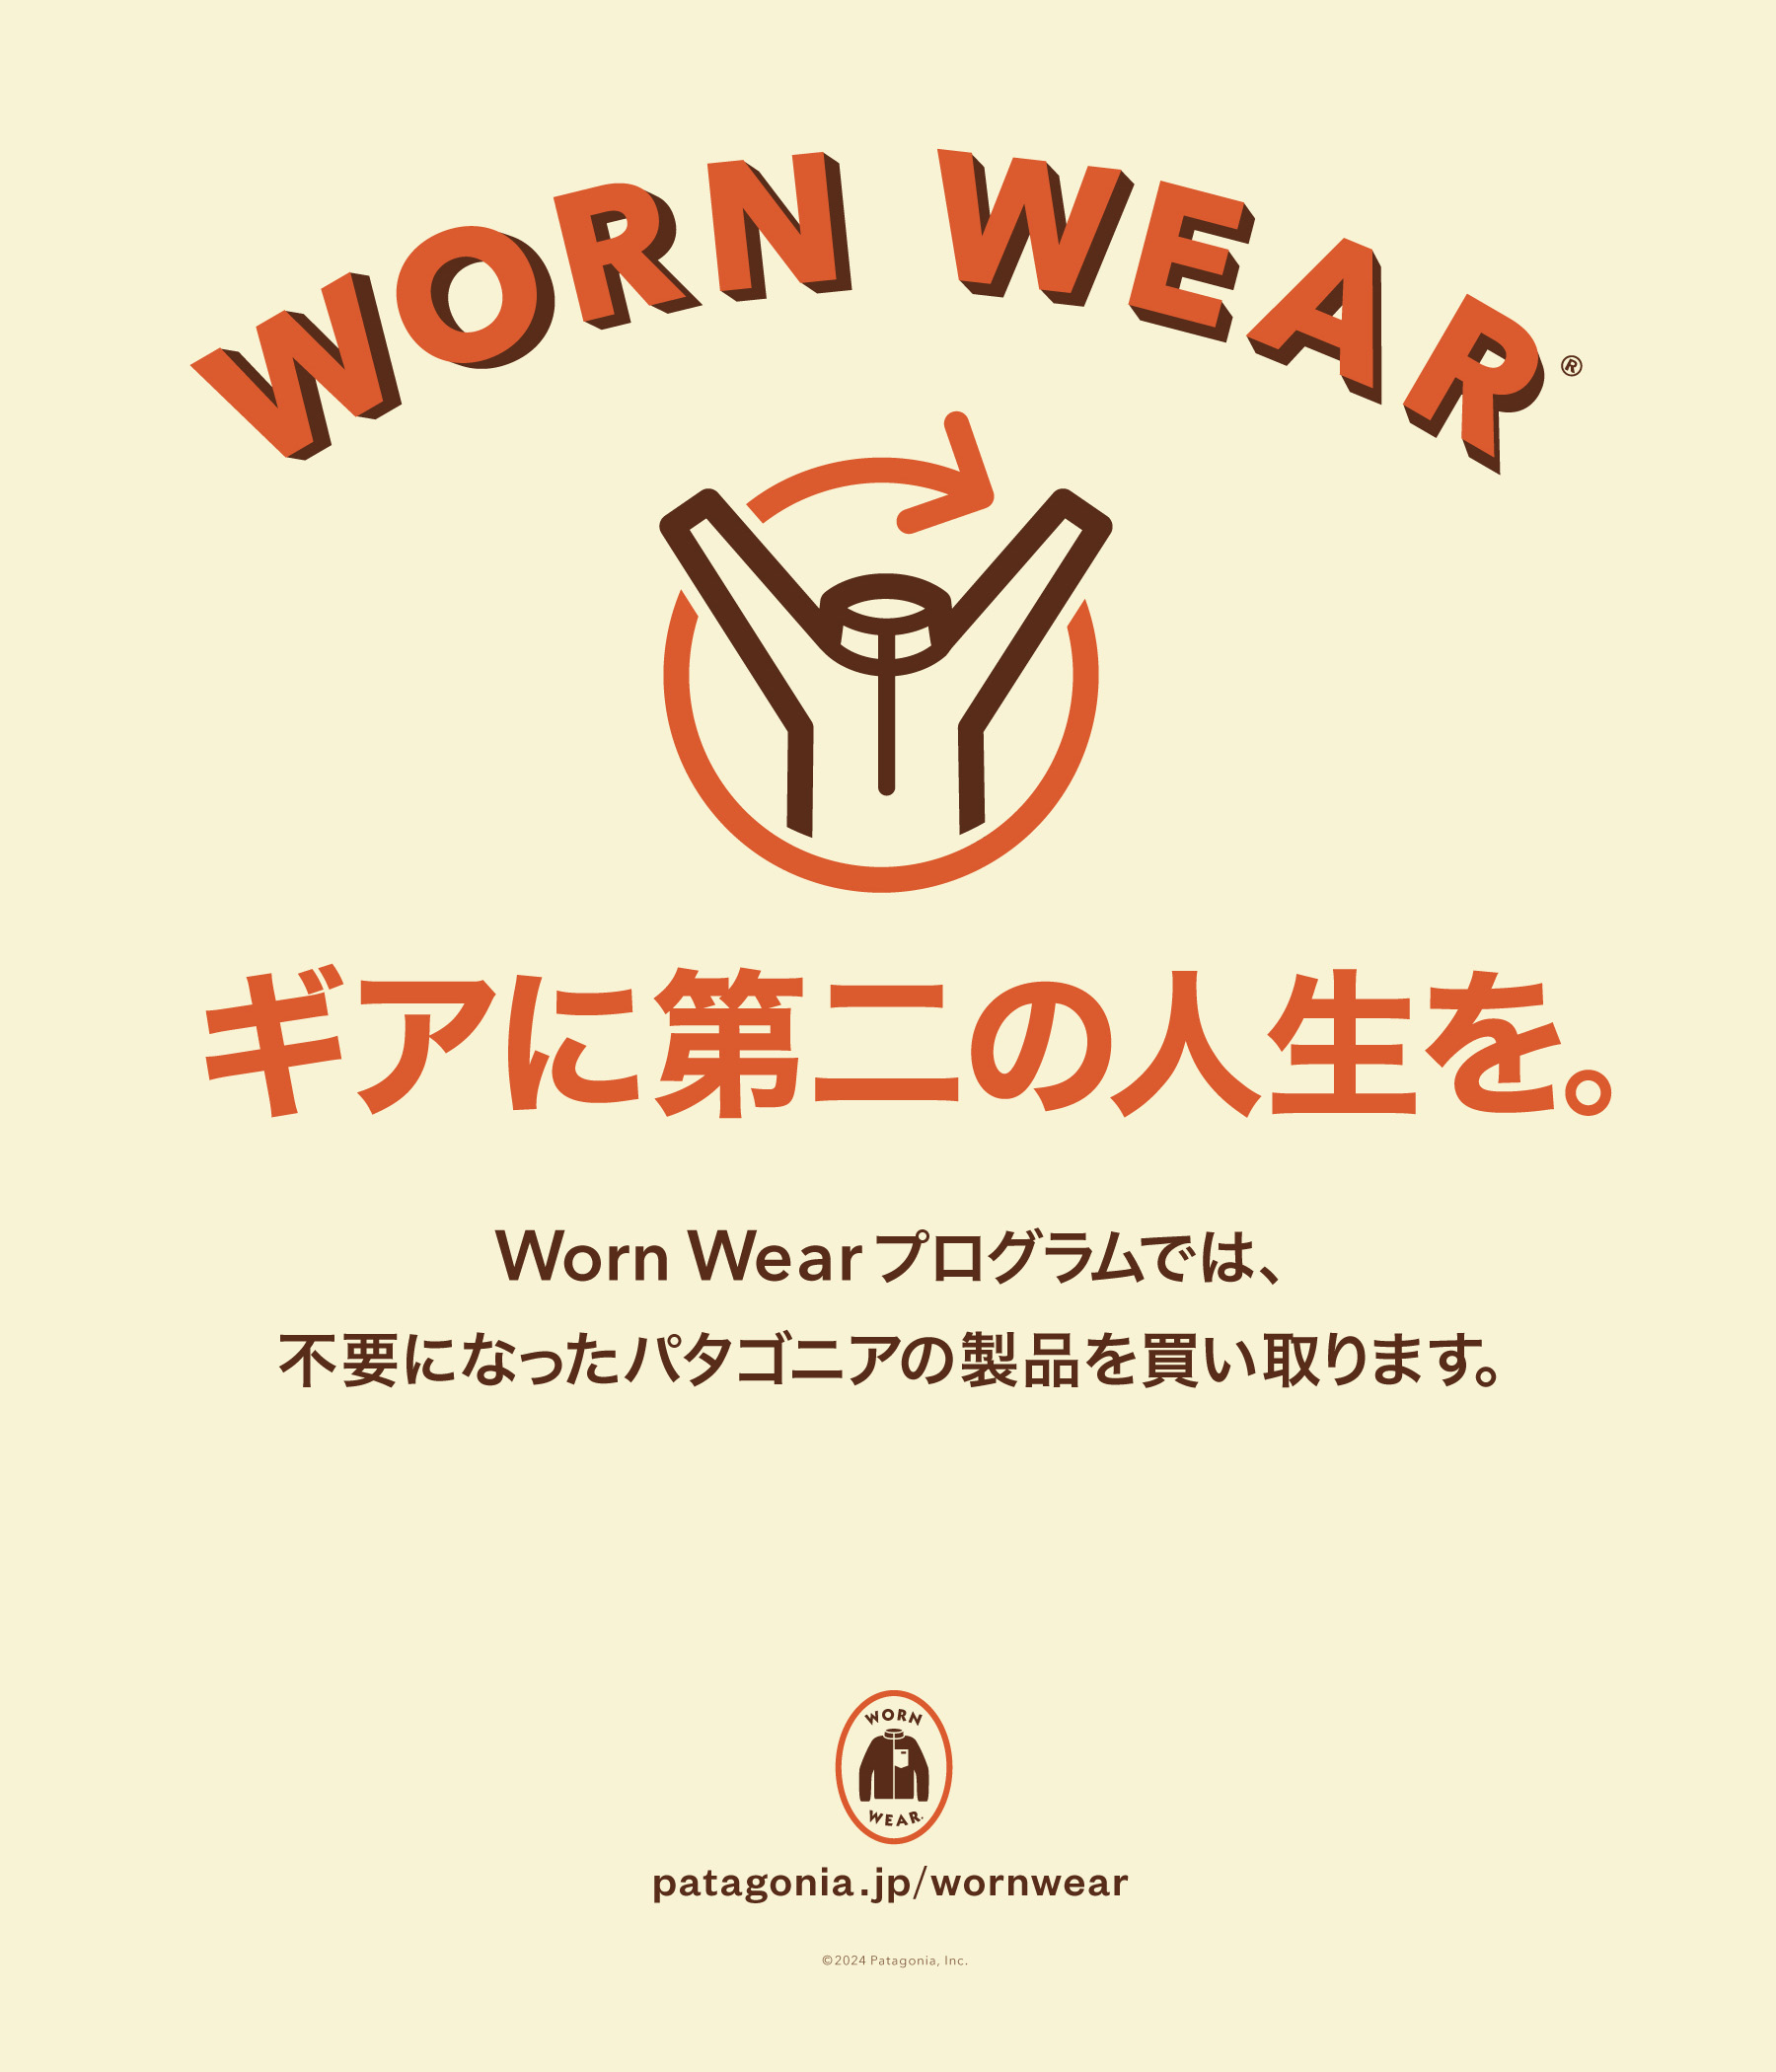 Patagoniaが「Worn Wear」プログラムで、中古ウェアなどの買取を開始。5月24日からは期間限定で「Worn Wearポップアップストア パタゴニア東京・渋谷」も展開